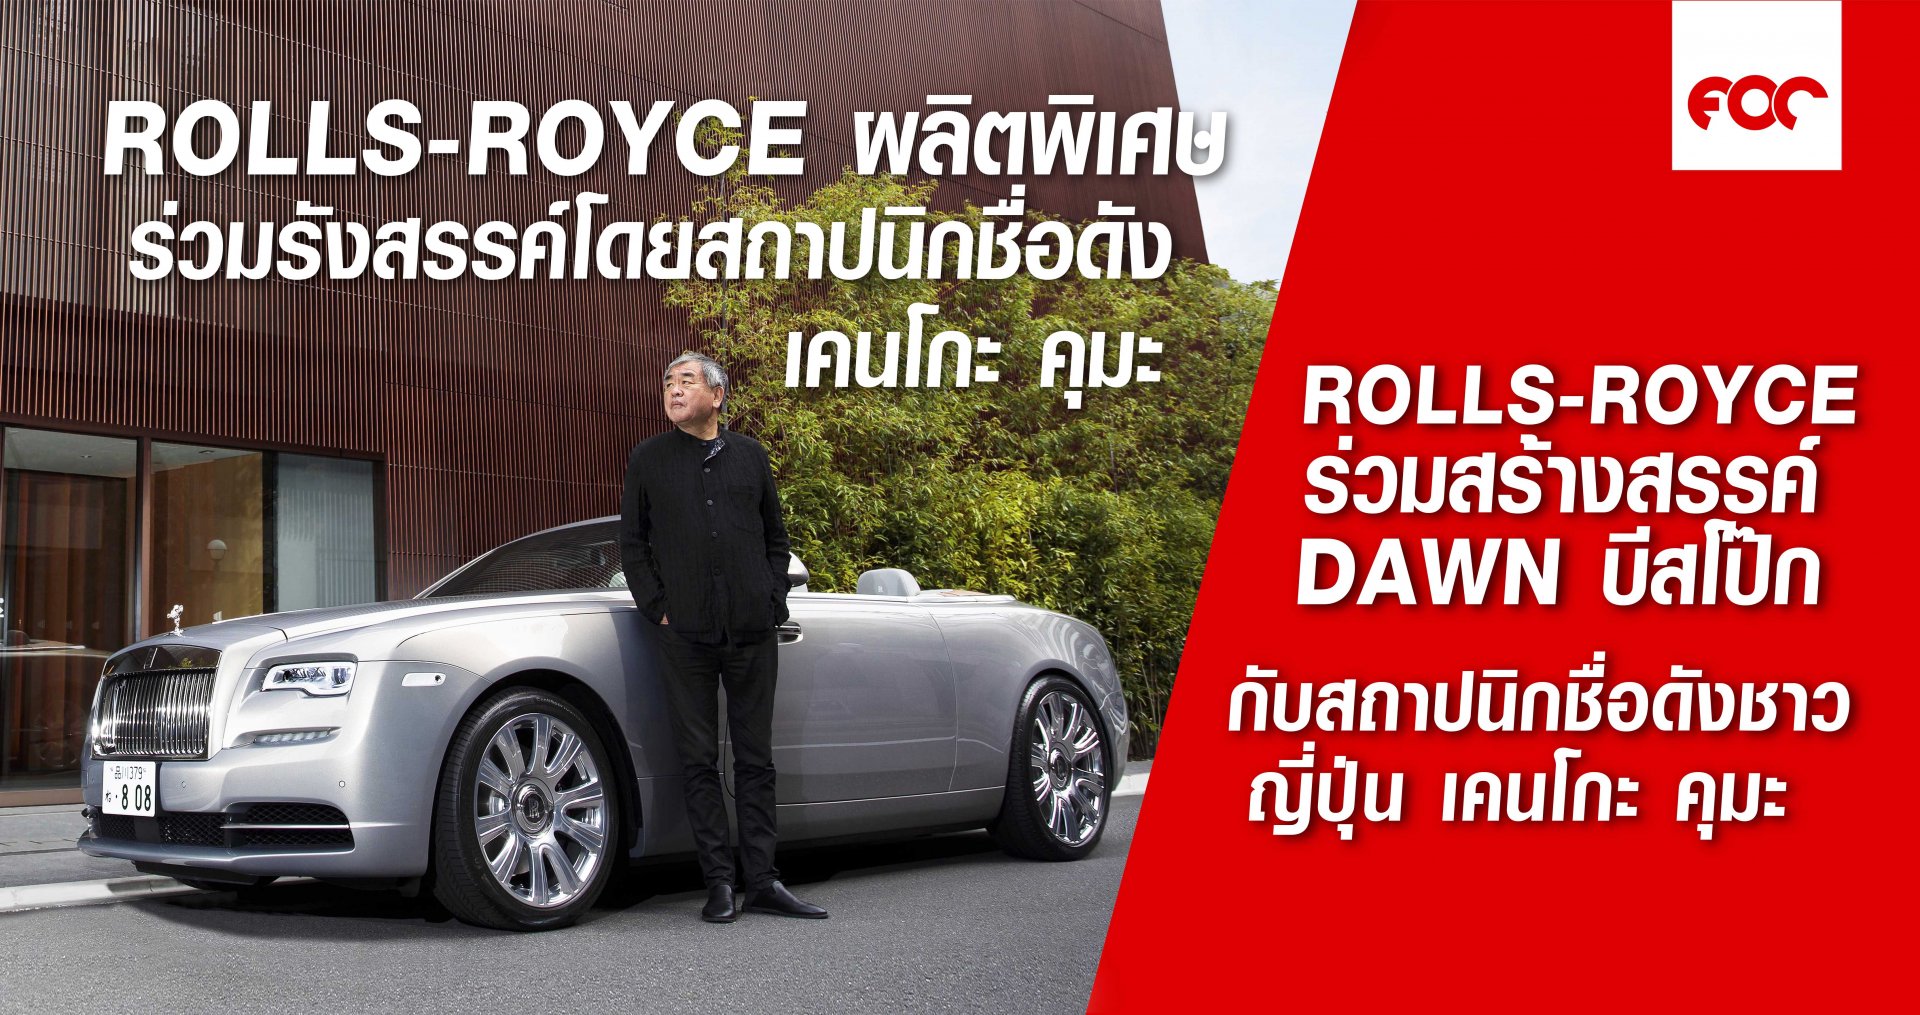 ROLLS-ROYCE ร่วมสร้างสรรค์  DAWN บีสโป๊ก  กับ เคนโกะ คุมะ สถาปนิกชื่อดังชาวญี่ปุ่น   